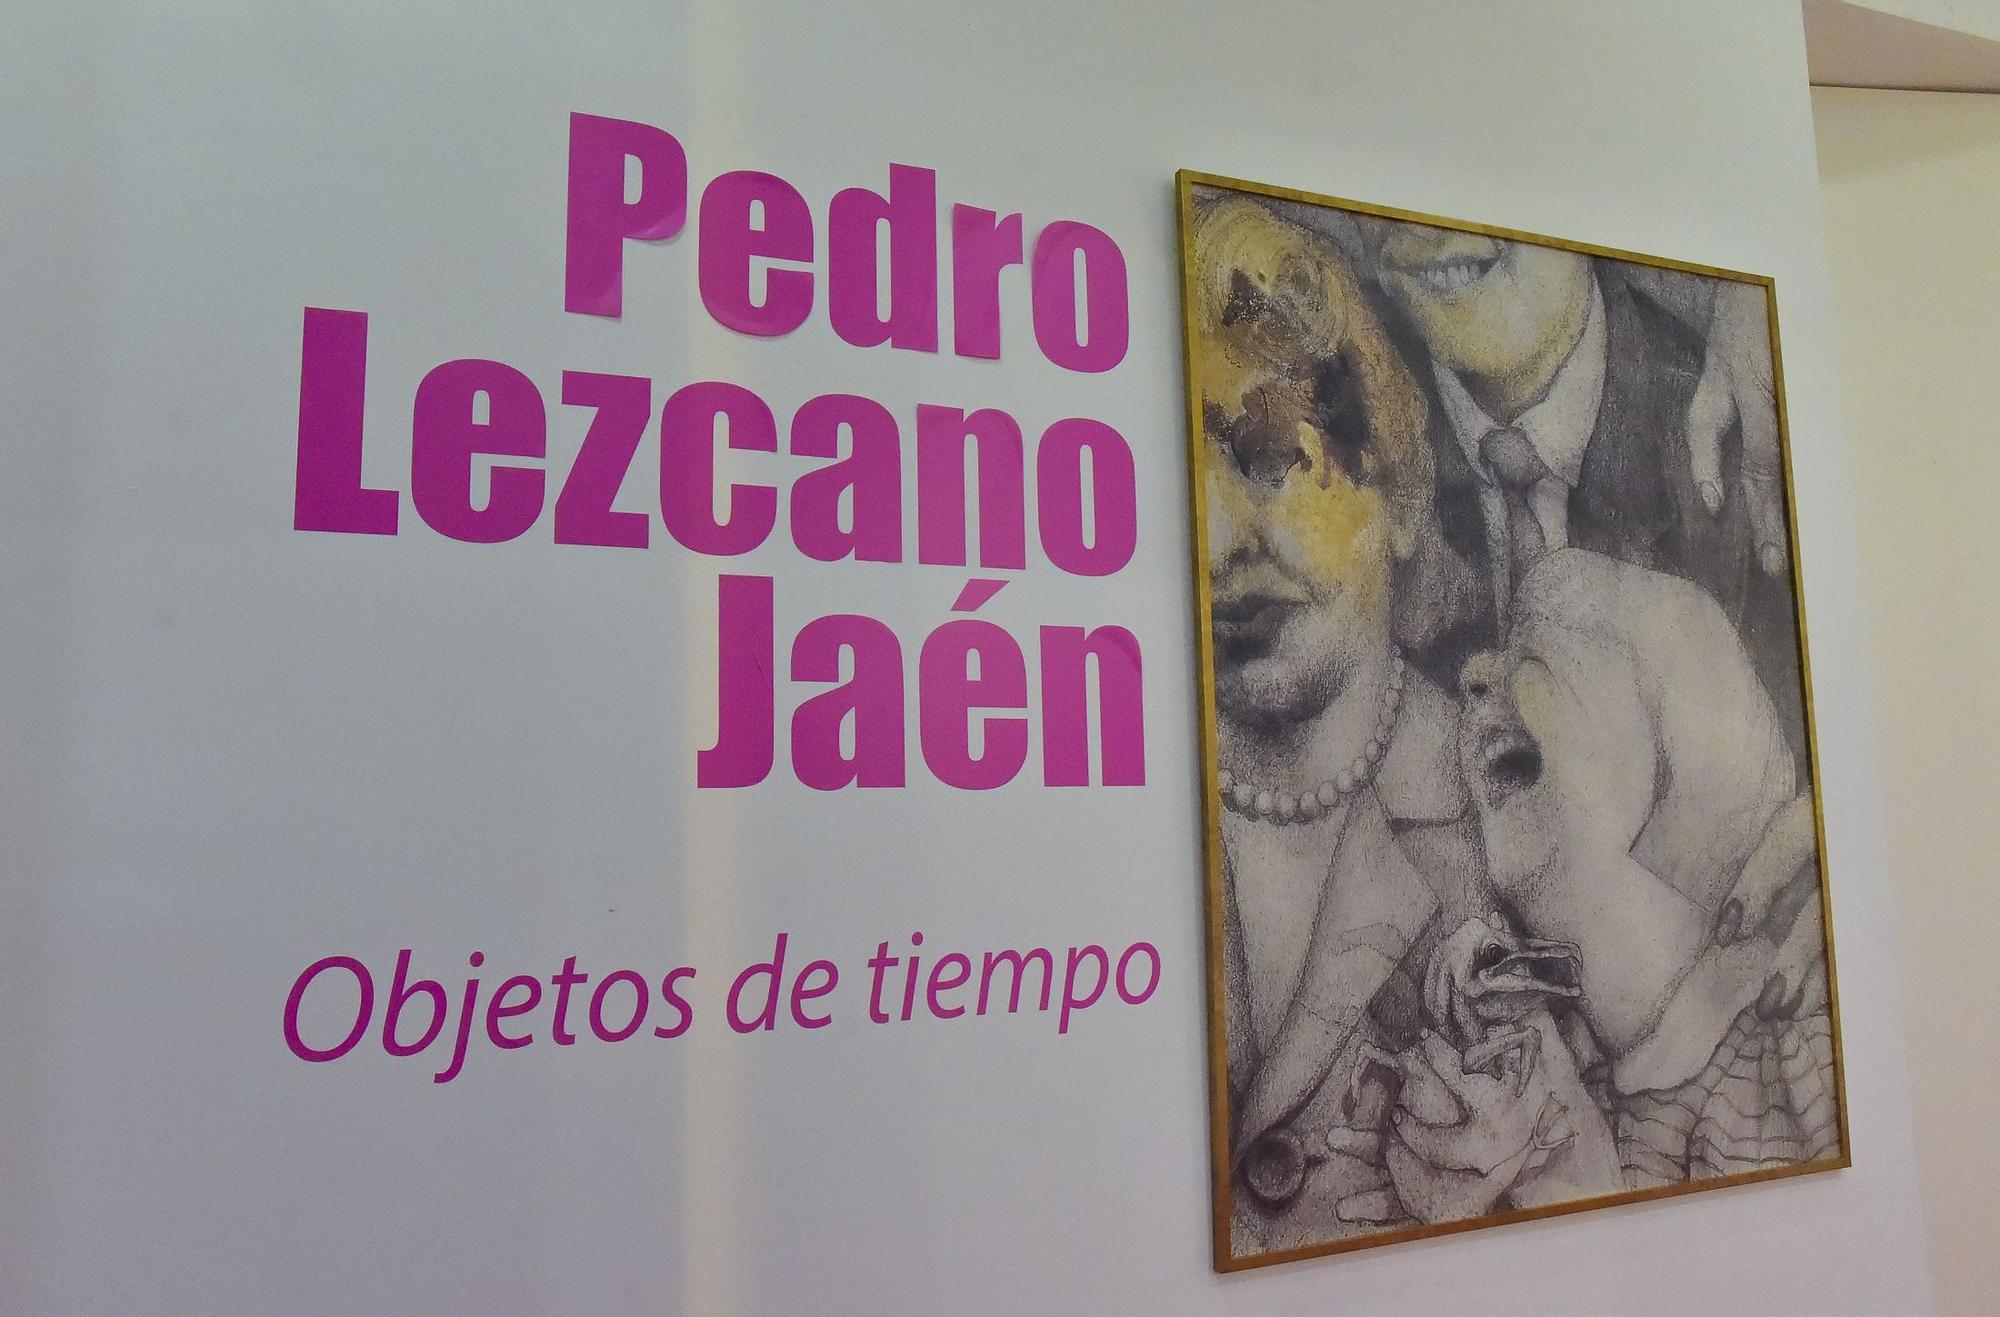 Exposición Objeto de Tiempo, de Pedro Lezcano